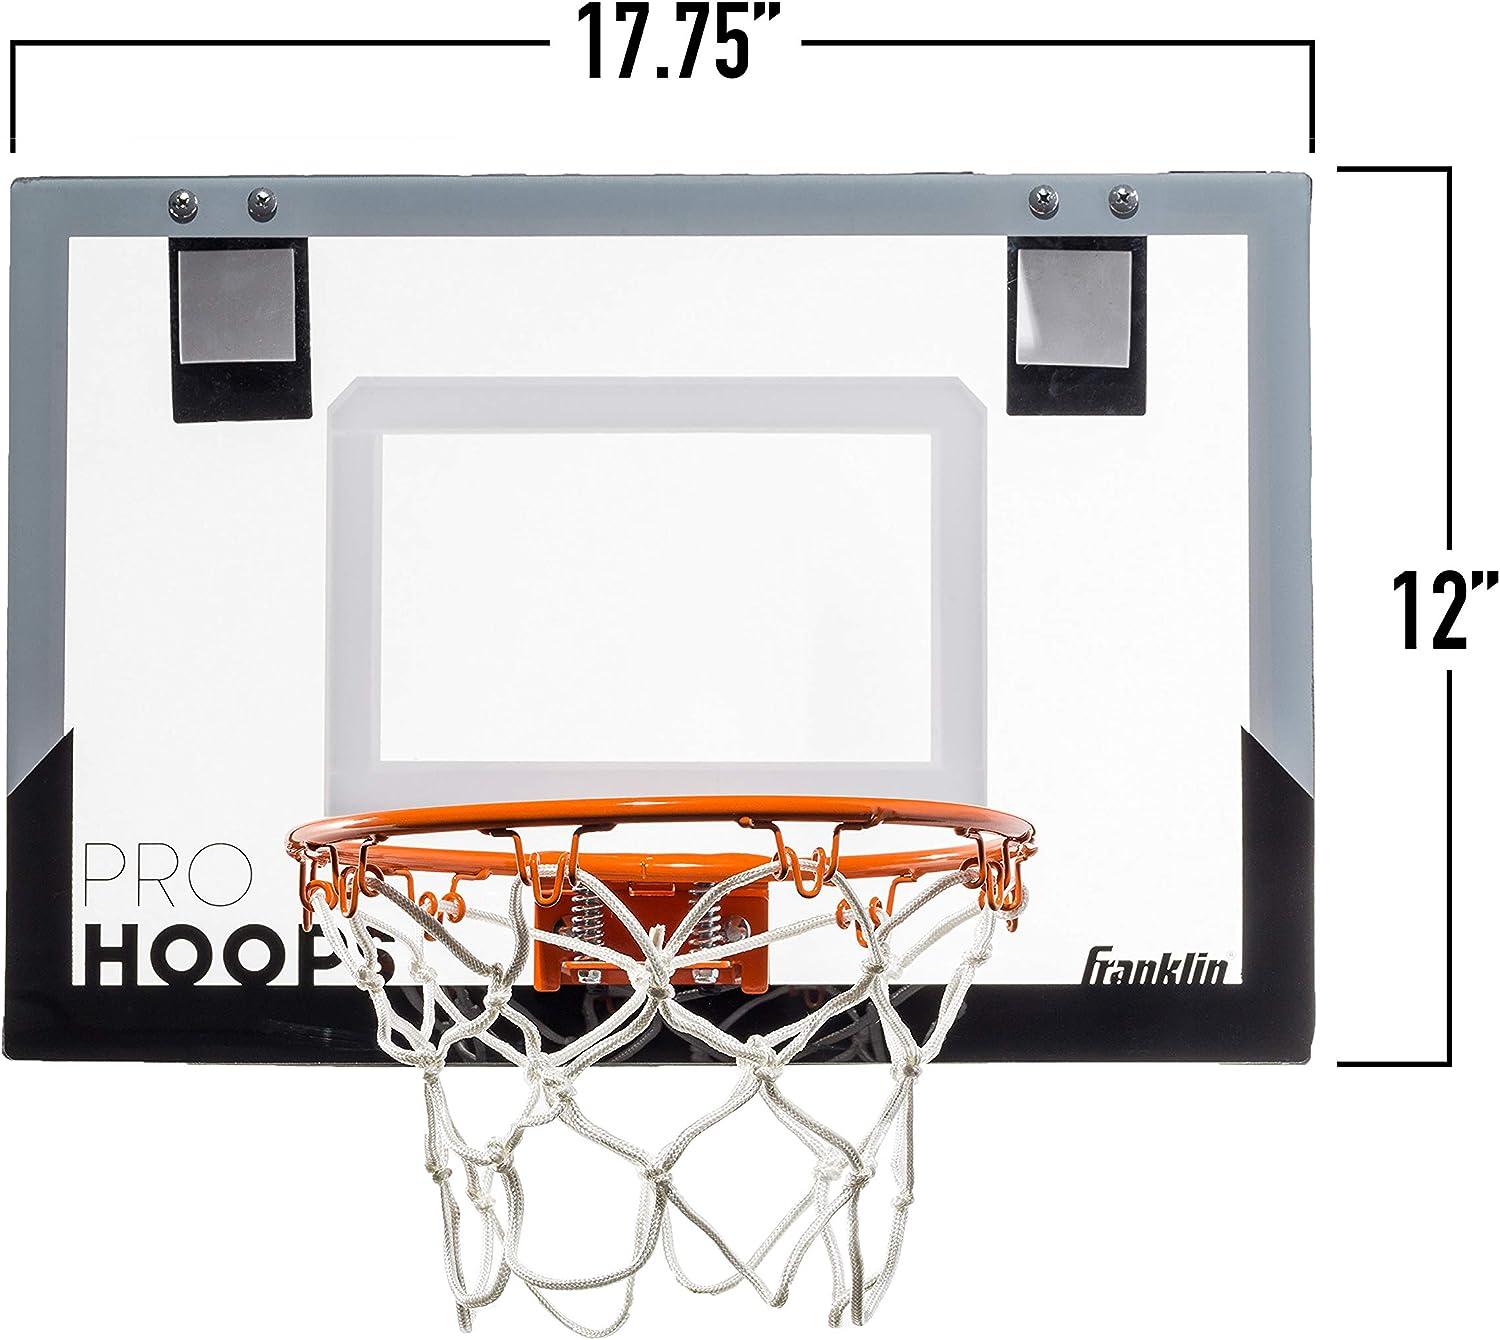 door mini basketball hoop